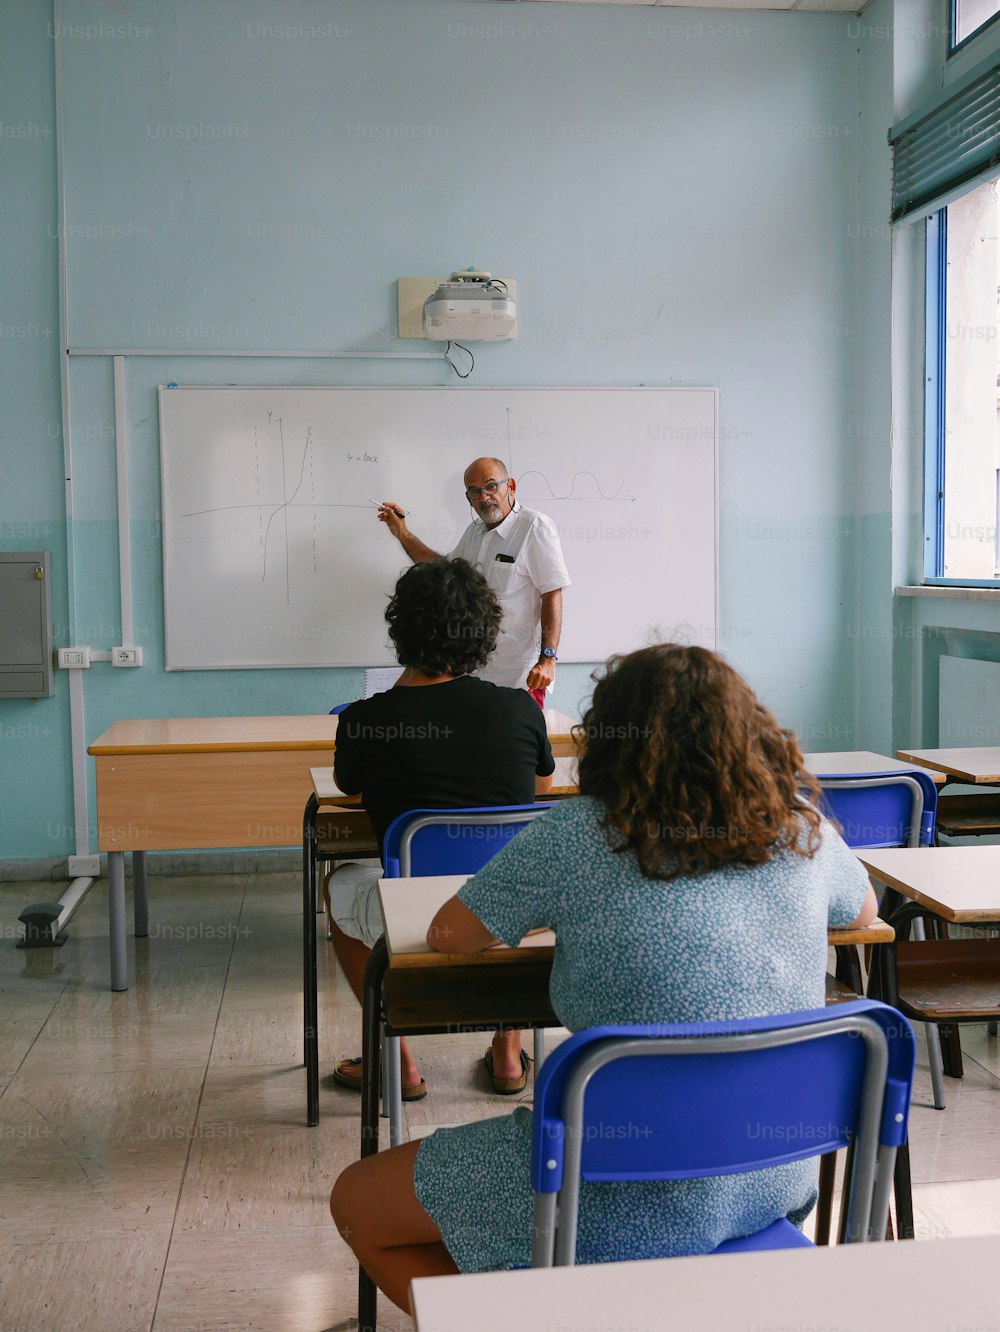 Ein Mann steht vor einem Whiteboard in einem Klassenzimmer